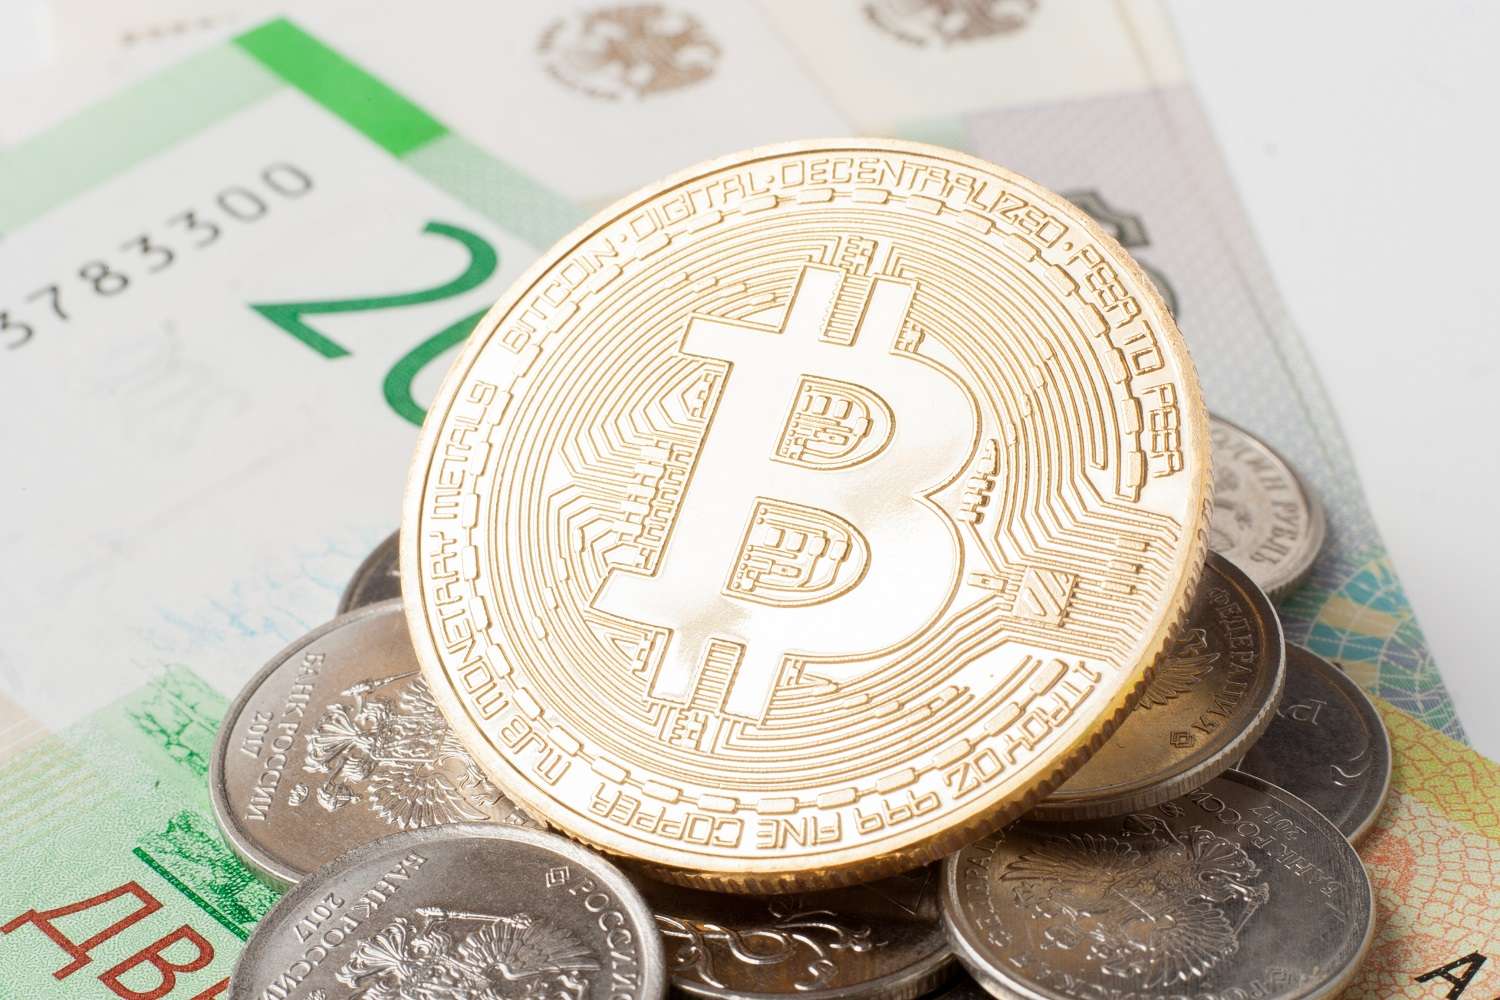 Металлический токен, символизирующий Bitcoin, лежит на вершине стопки российских монет и банкнот.